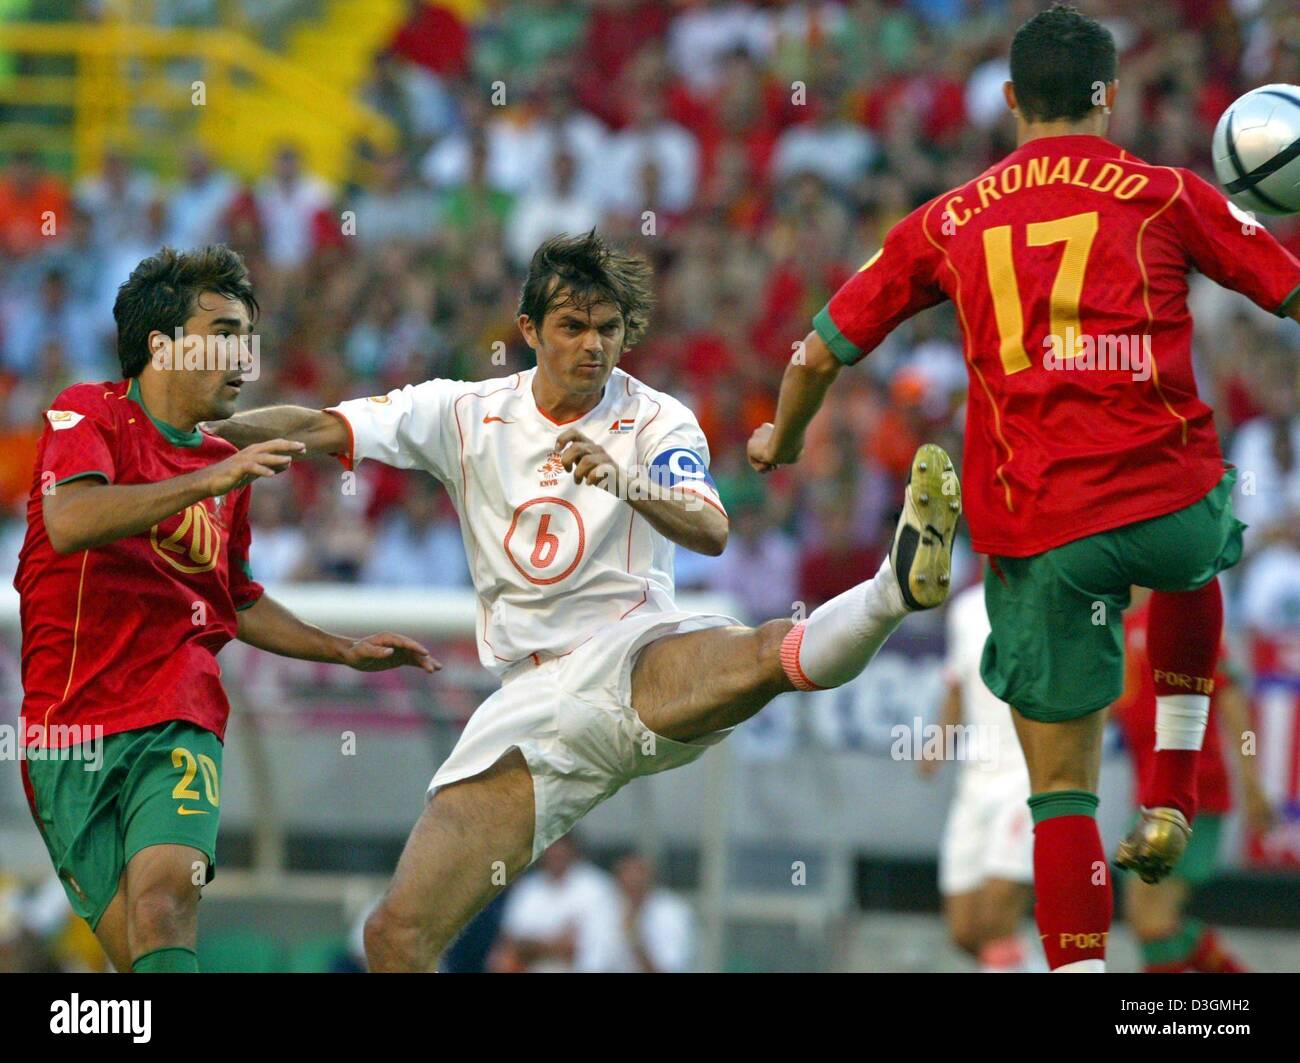 (Afp) - le capitaine de l'équipe néerlandaise Phillip Cocu (C) se bat pour la balle avec les joueurs portugais Cristiano Ronaldo (R) et Deco (L) au cours de l'Euro 2004 demi-finale contre le Portugal et les Pays-Bas à Lisbonne, Portugal, 30 juin 2004. Le Portugal a éliminé les Pays-Bas avec un gain de 2 à 1, la réalisation de sa toute première qualification pour la finale européenne.  + + +PAS D'APPLICATIONS MOBILES  + + + Banque D'Images